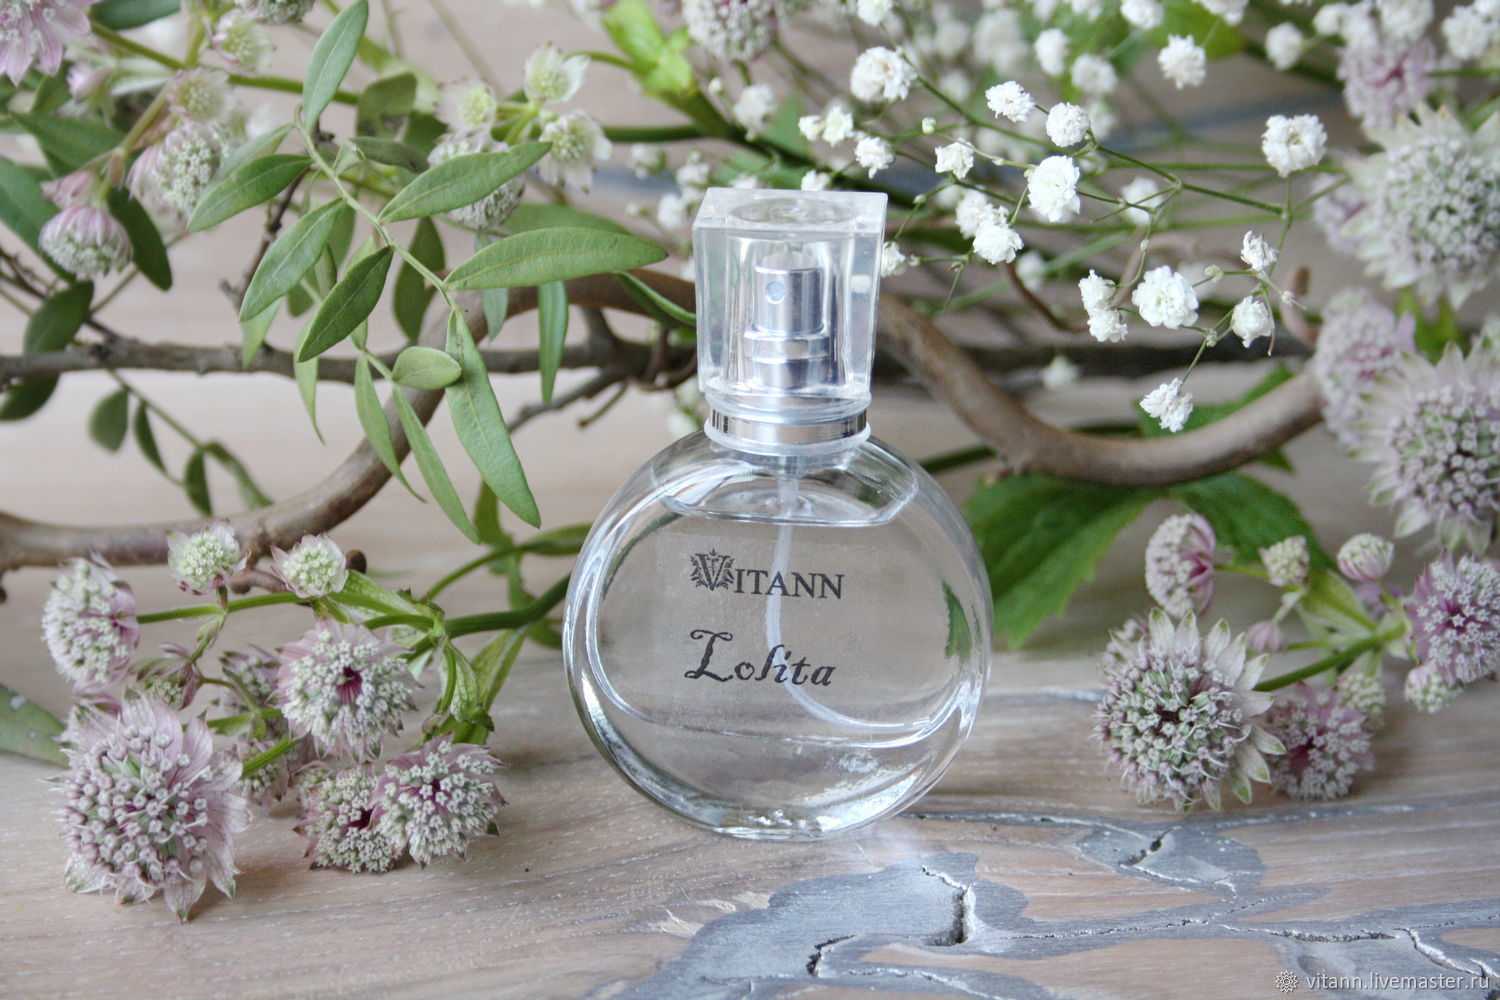 Классификация женской парфюмерии: виды и группы ароматов по нотам и стойкости